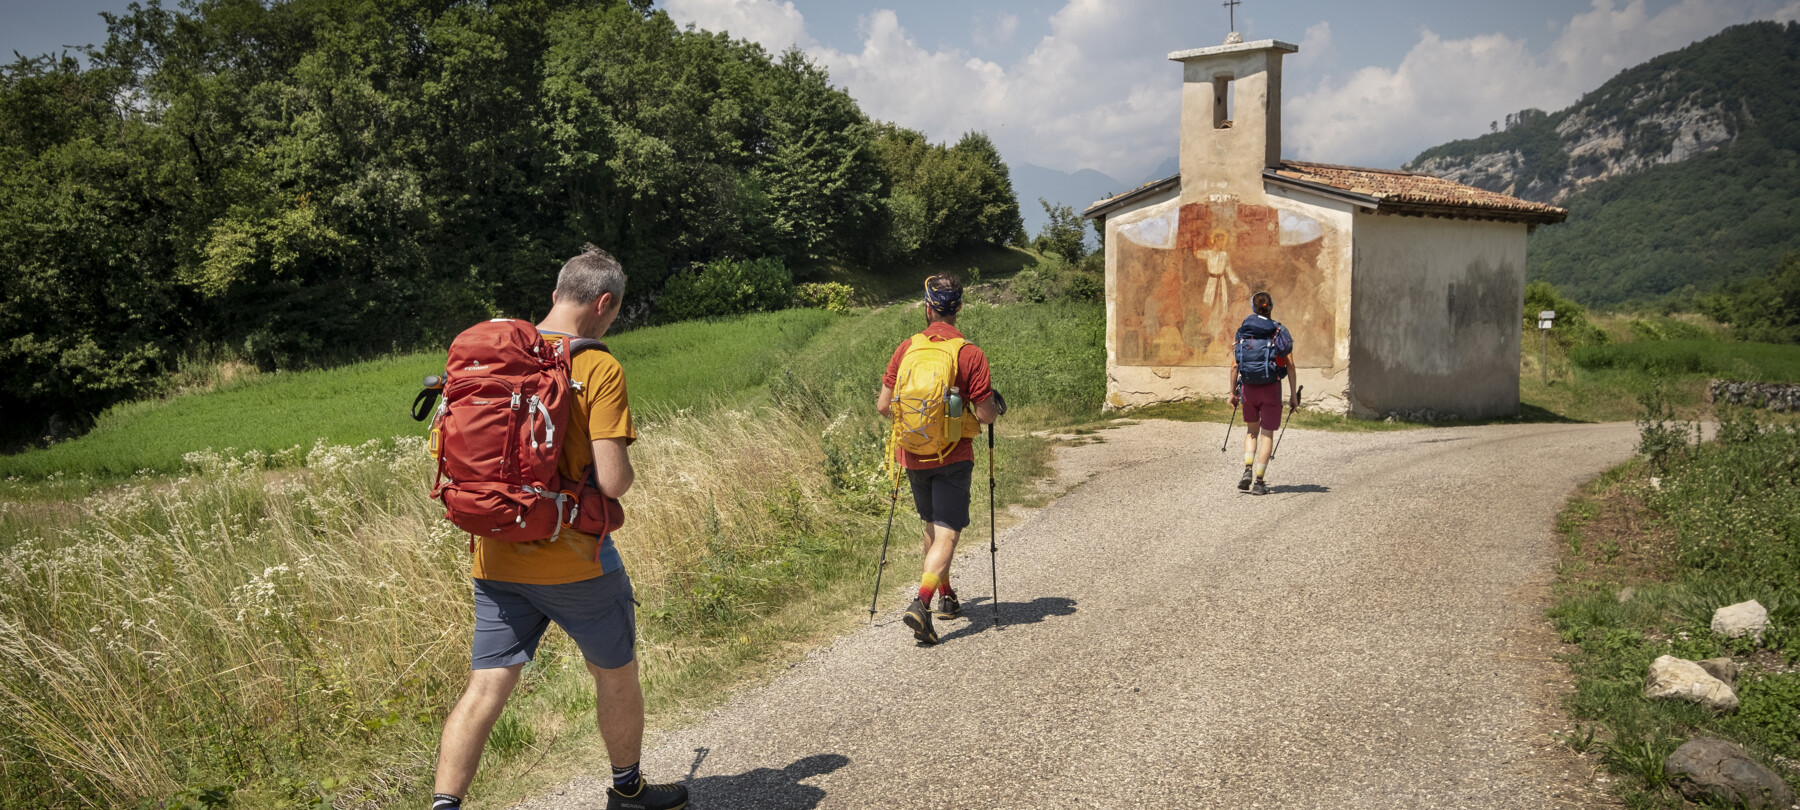 Sentiero della Pace: tratto 4 | Rovereto e Vallagarina